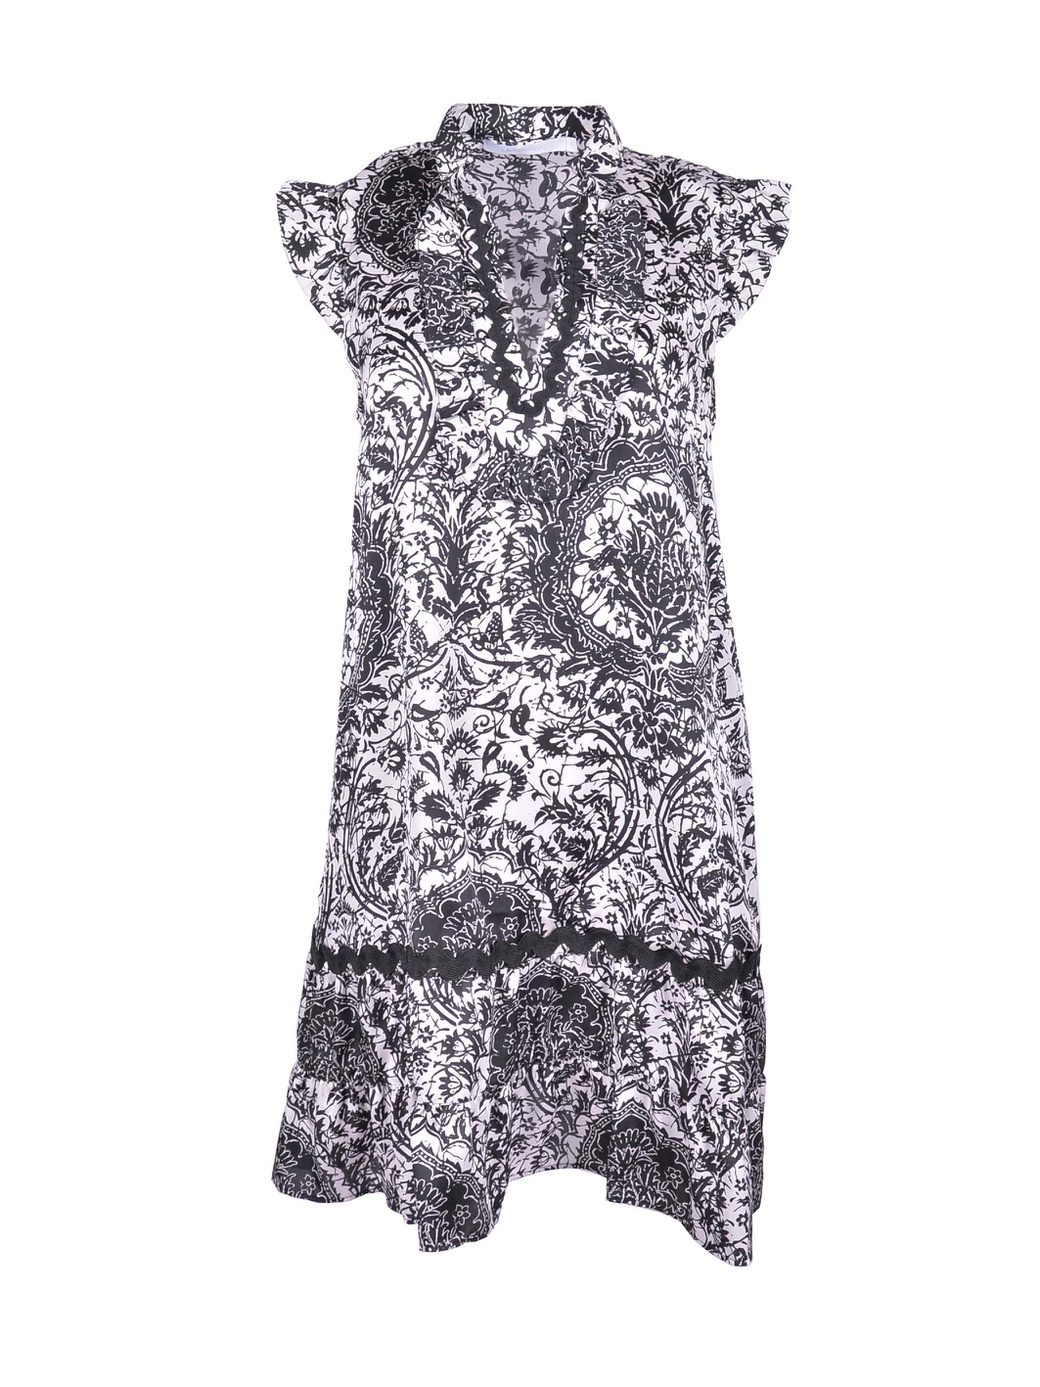 Платье Lauren Vidal с арнаментом re6076, черно-белое, S фото